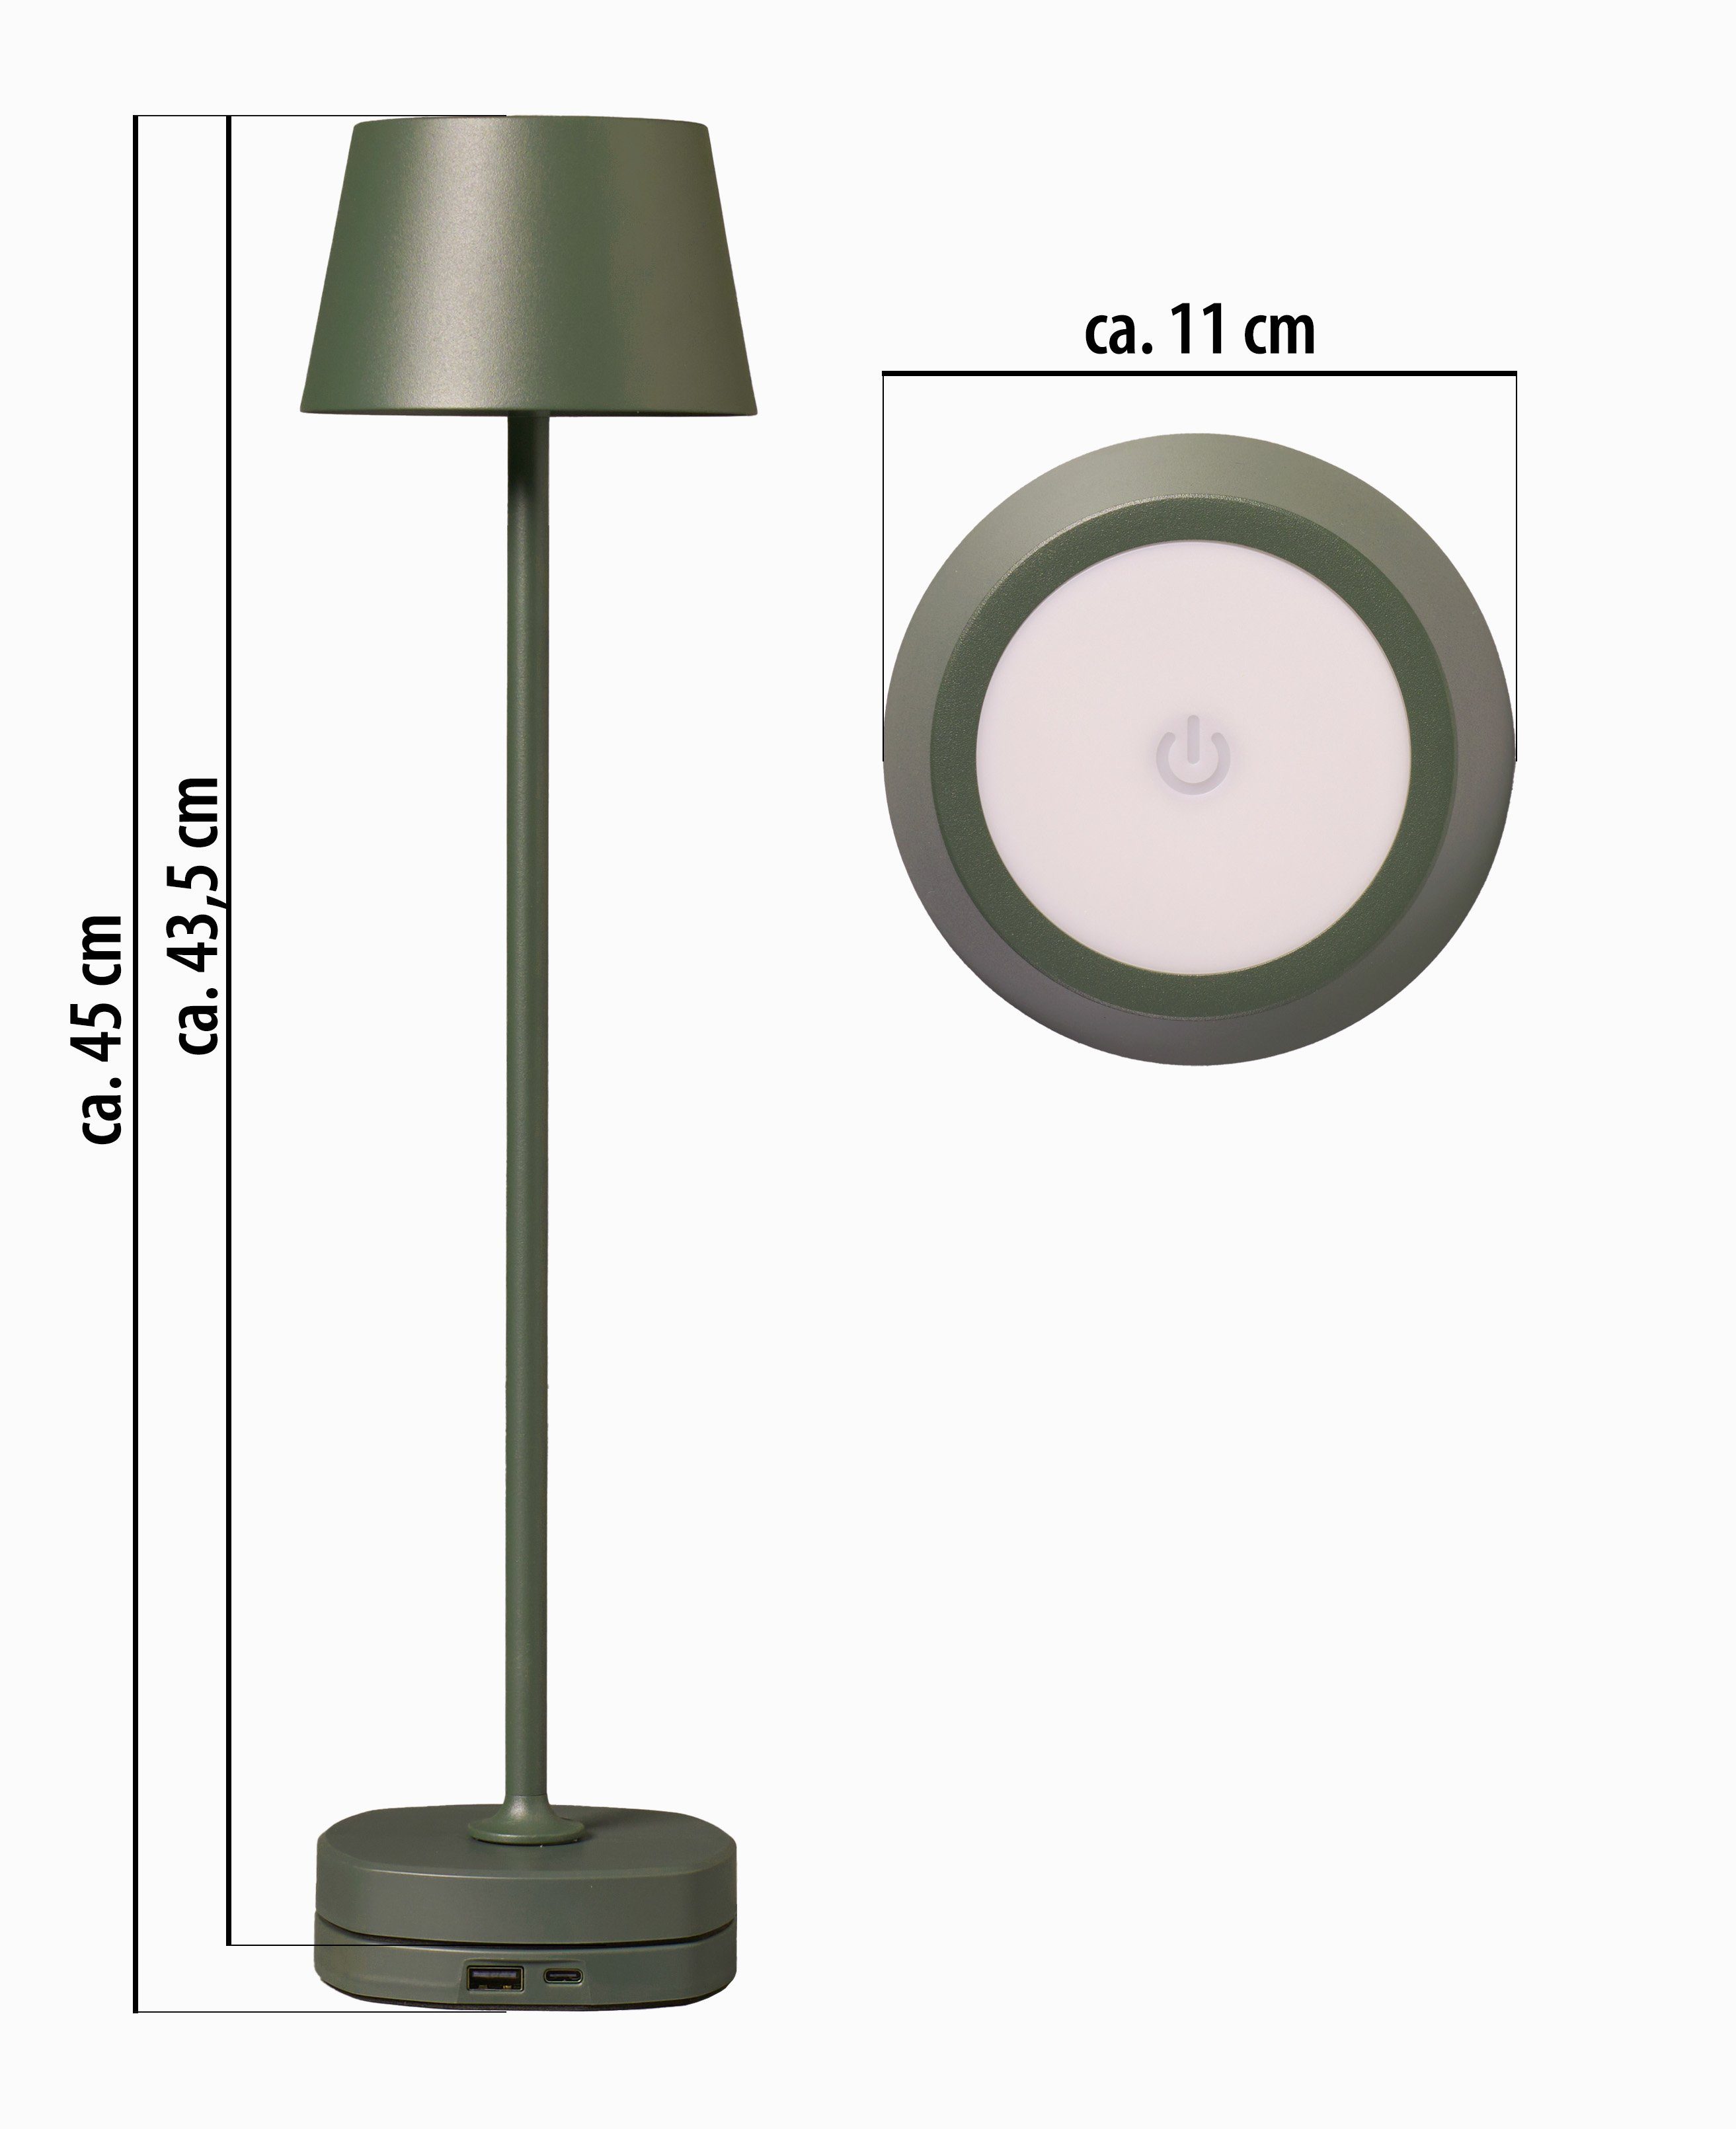 Northpoint Tischleuchte Tischlampe dimmbar mit hoch max. Akku warmweiße LED 45cm Ladestation olivegrün